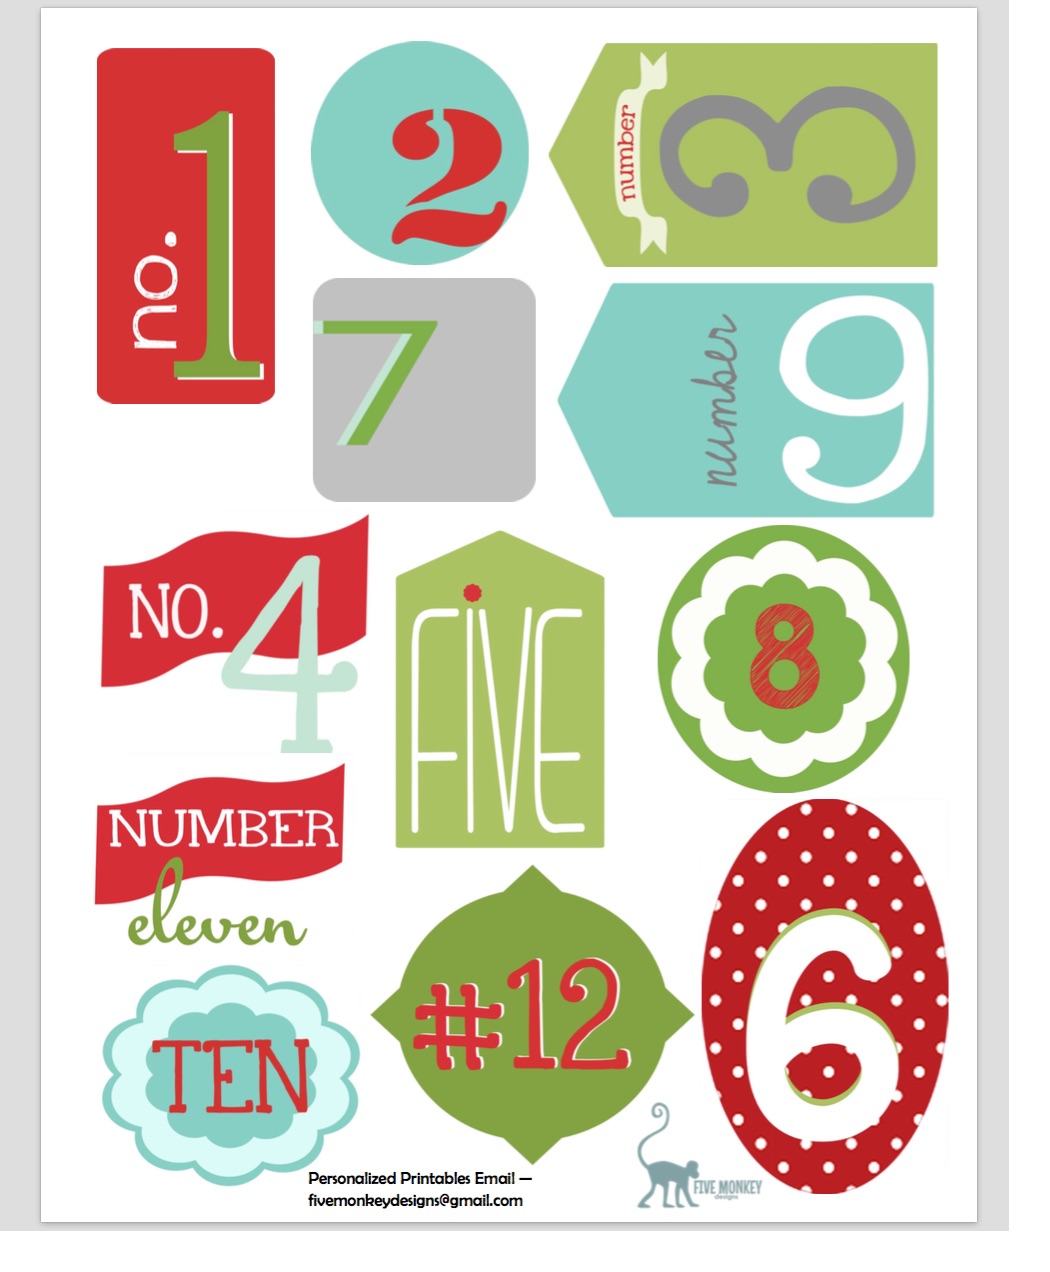 12 Days Of Christmas Tags Free Printable Printable Templates